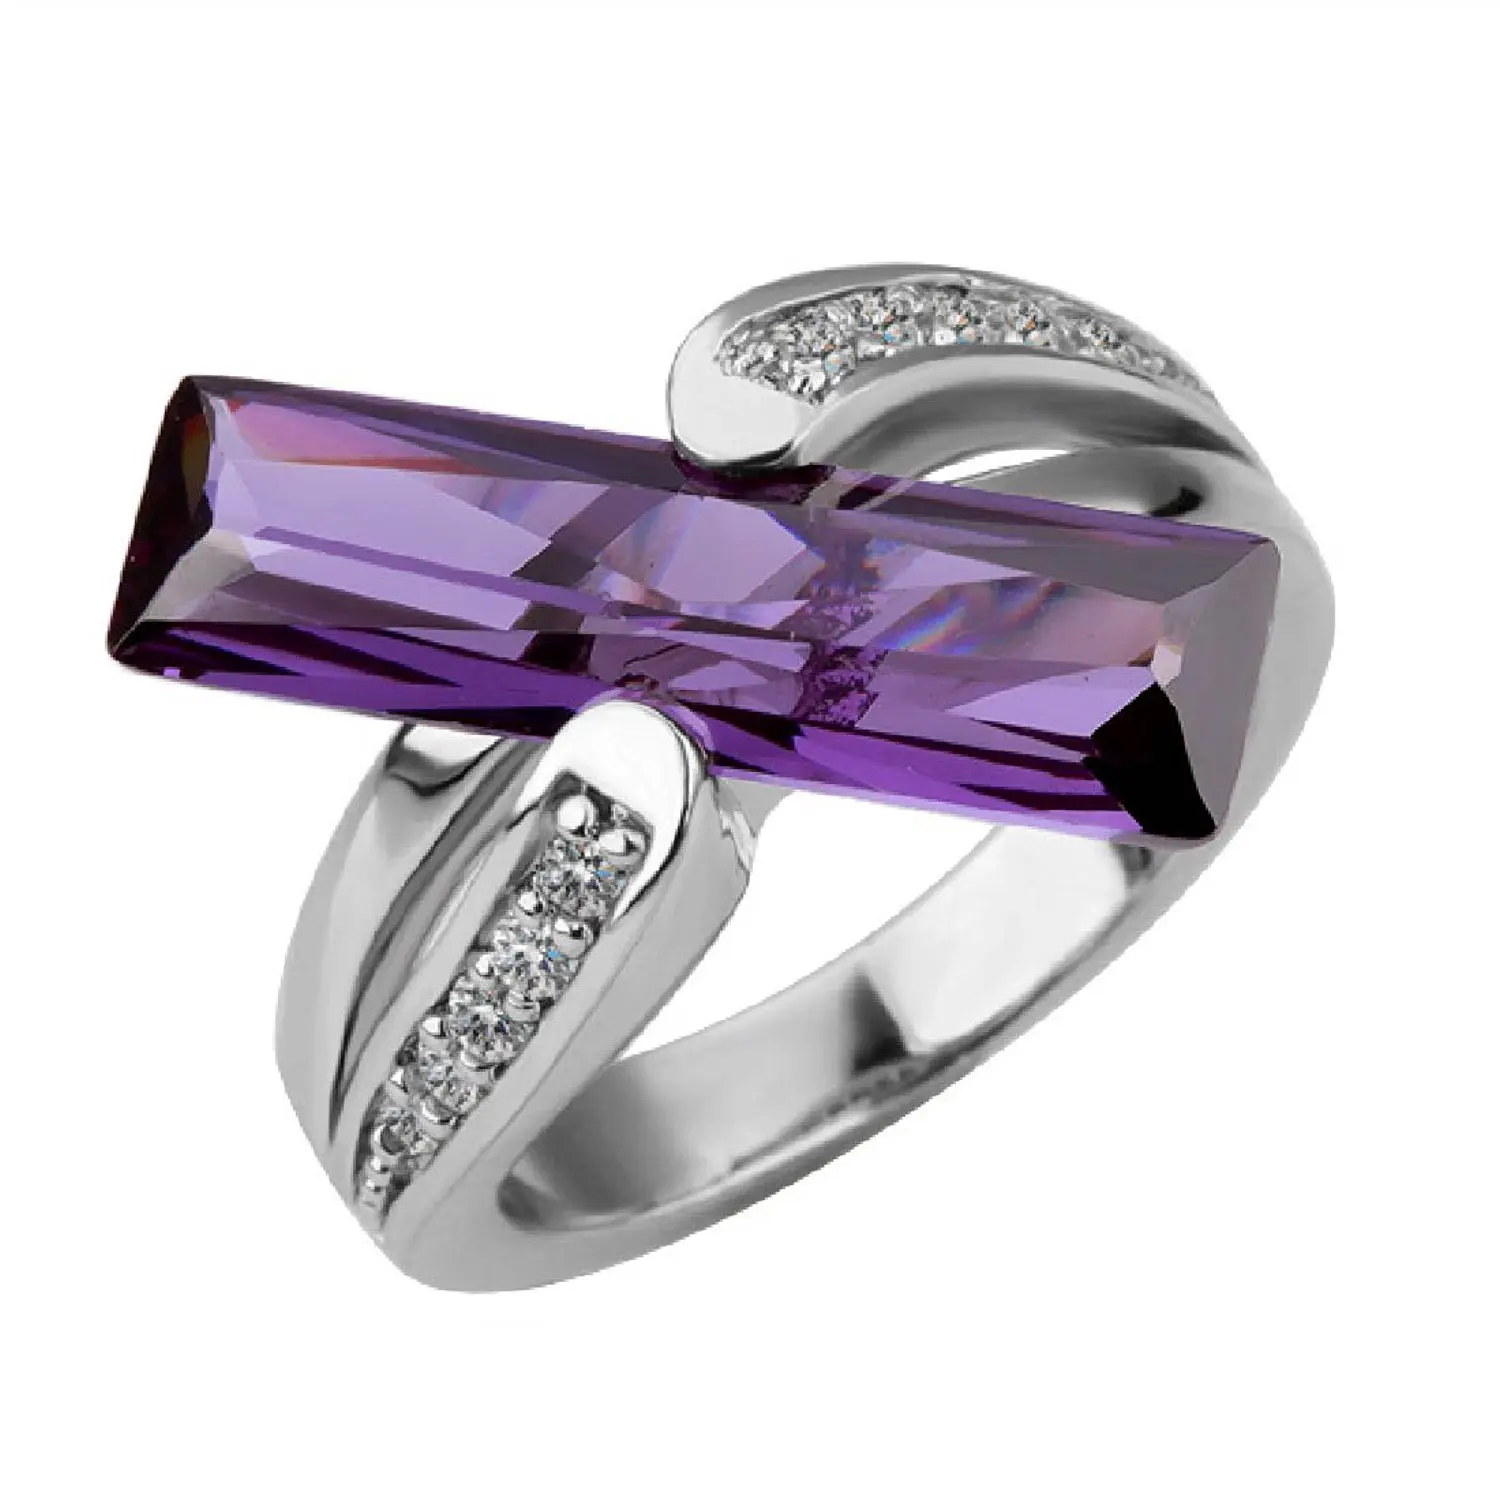 Кольцо с фиолетовым бриллиантом